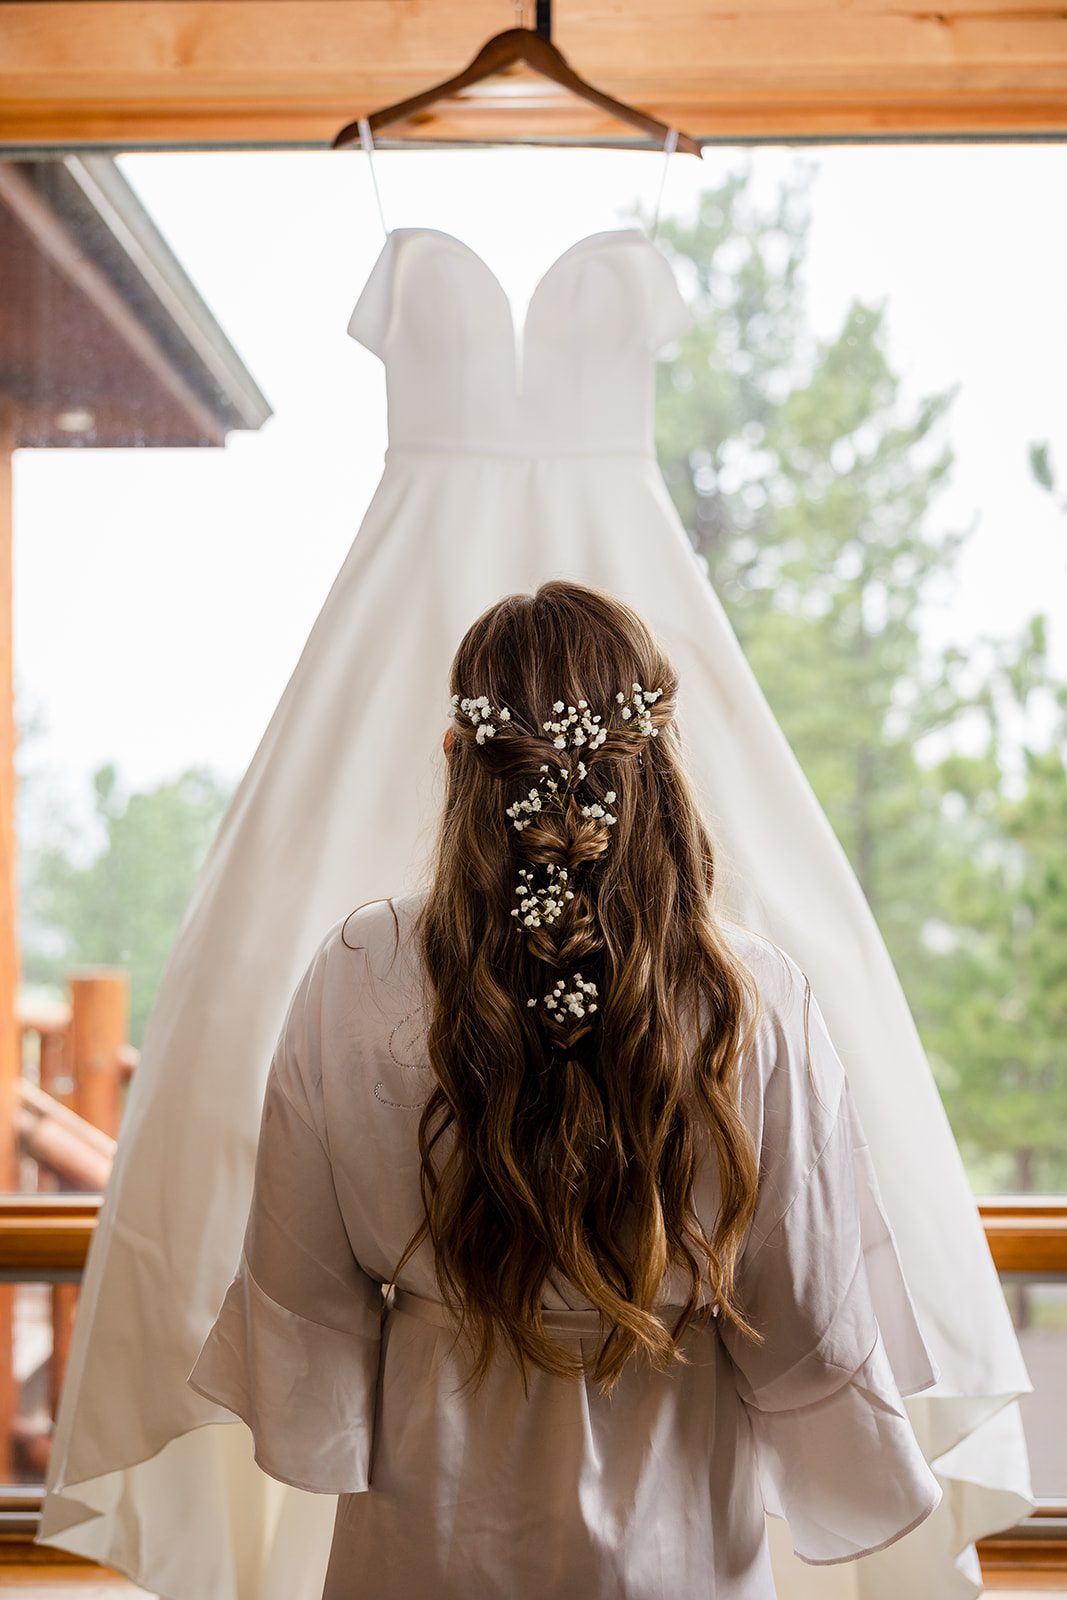 The bride looking at her wedding dress before her Hidden Valley Elopement ceremony. 